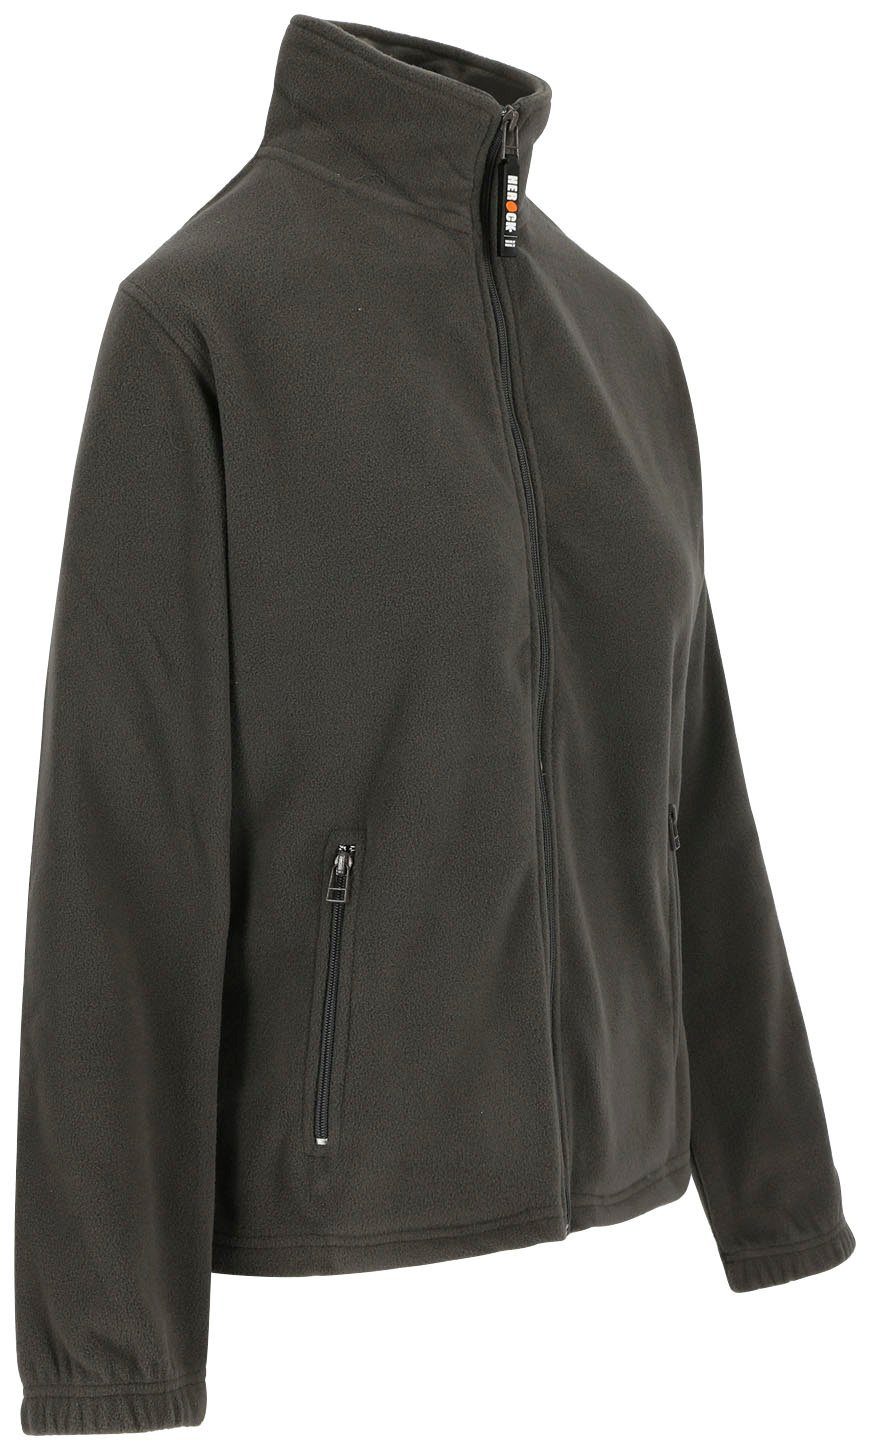 Jacke warm, und 2 langem Damen Fleece Reißverschluss, angenehm Herock grau Mit leicht Fleecejacke Seitentaschen, Deva